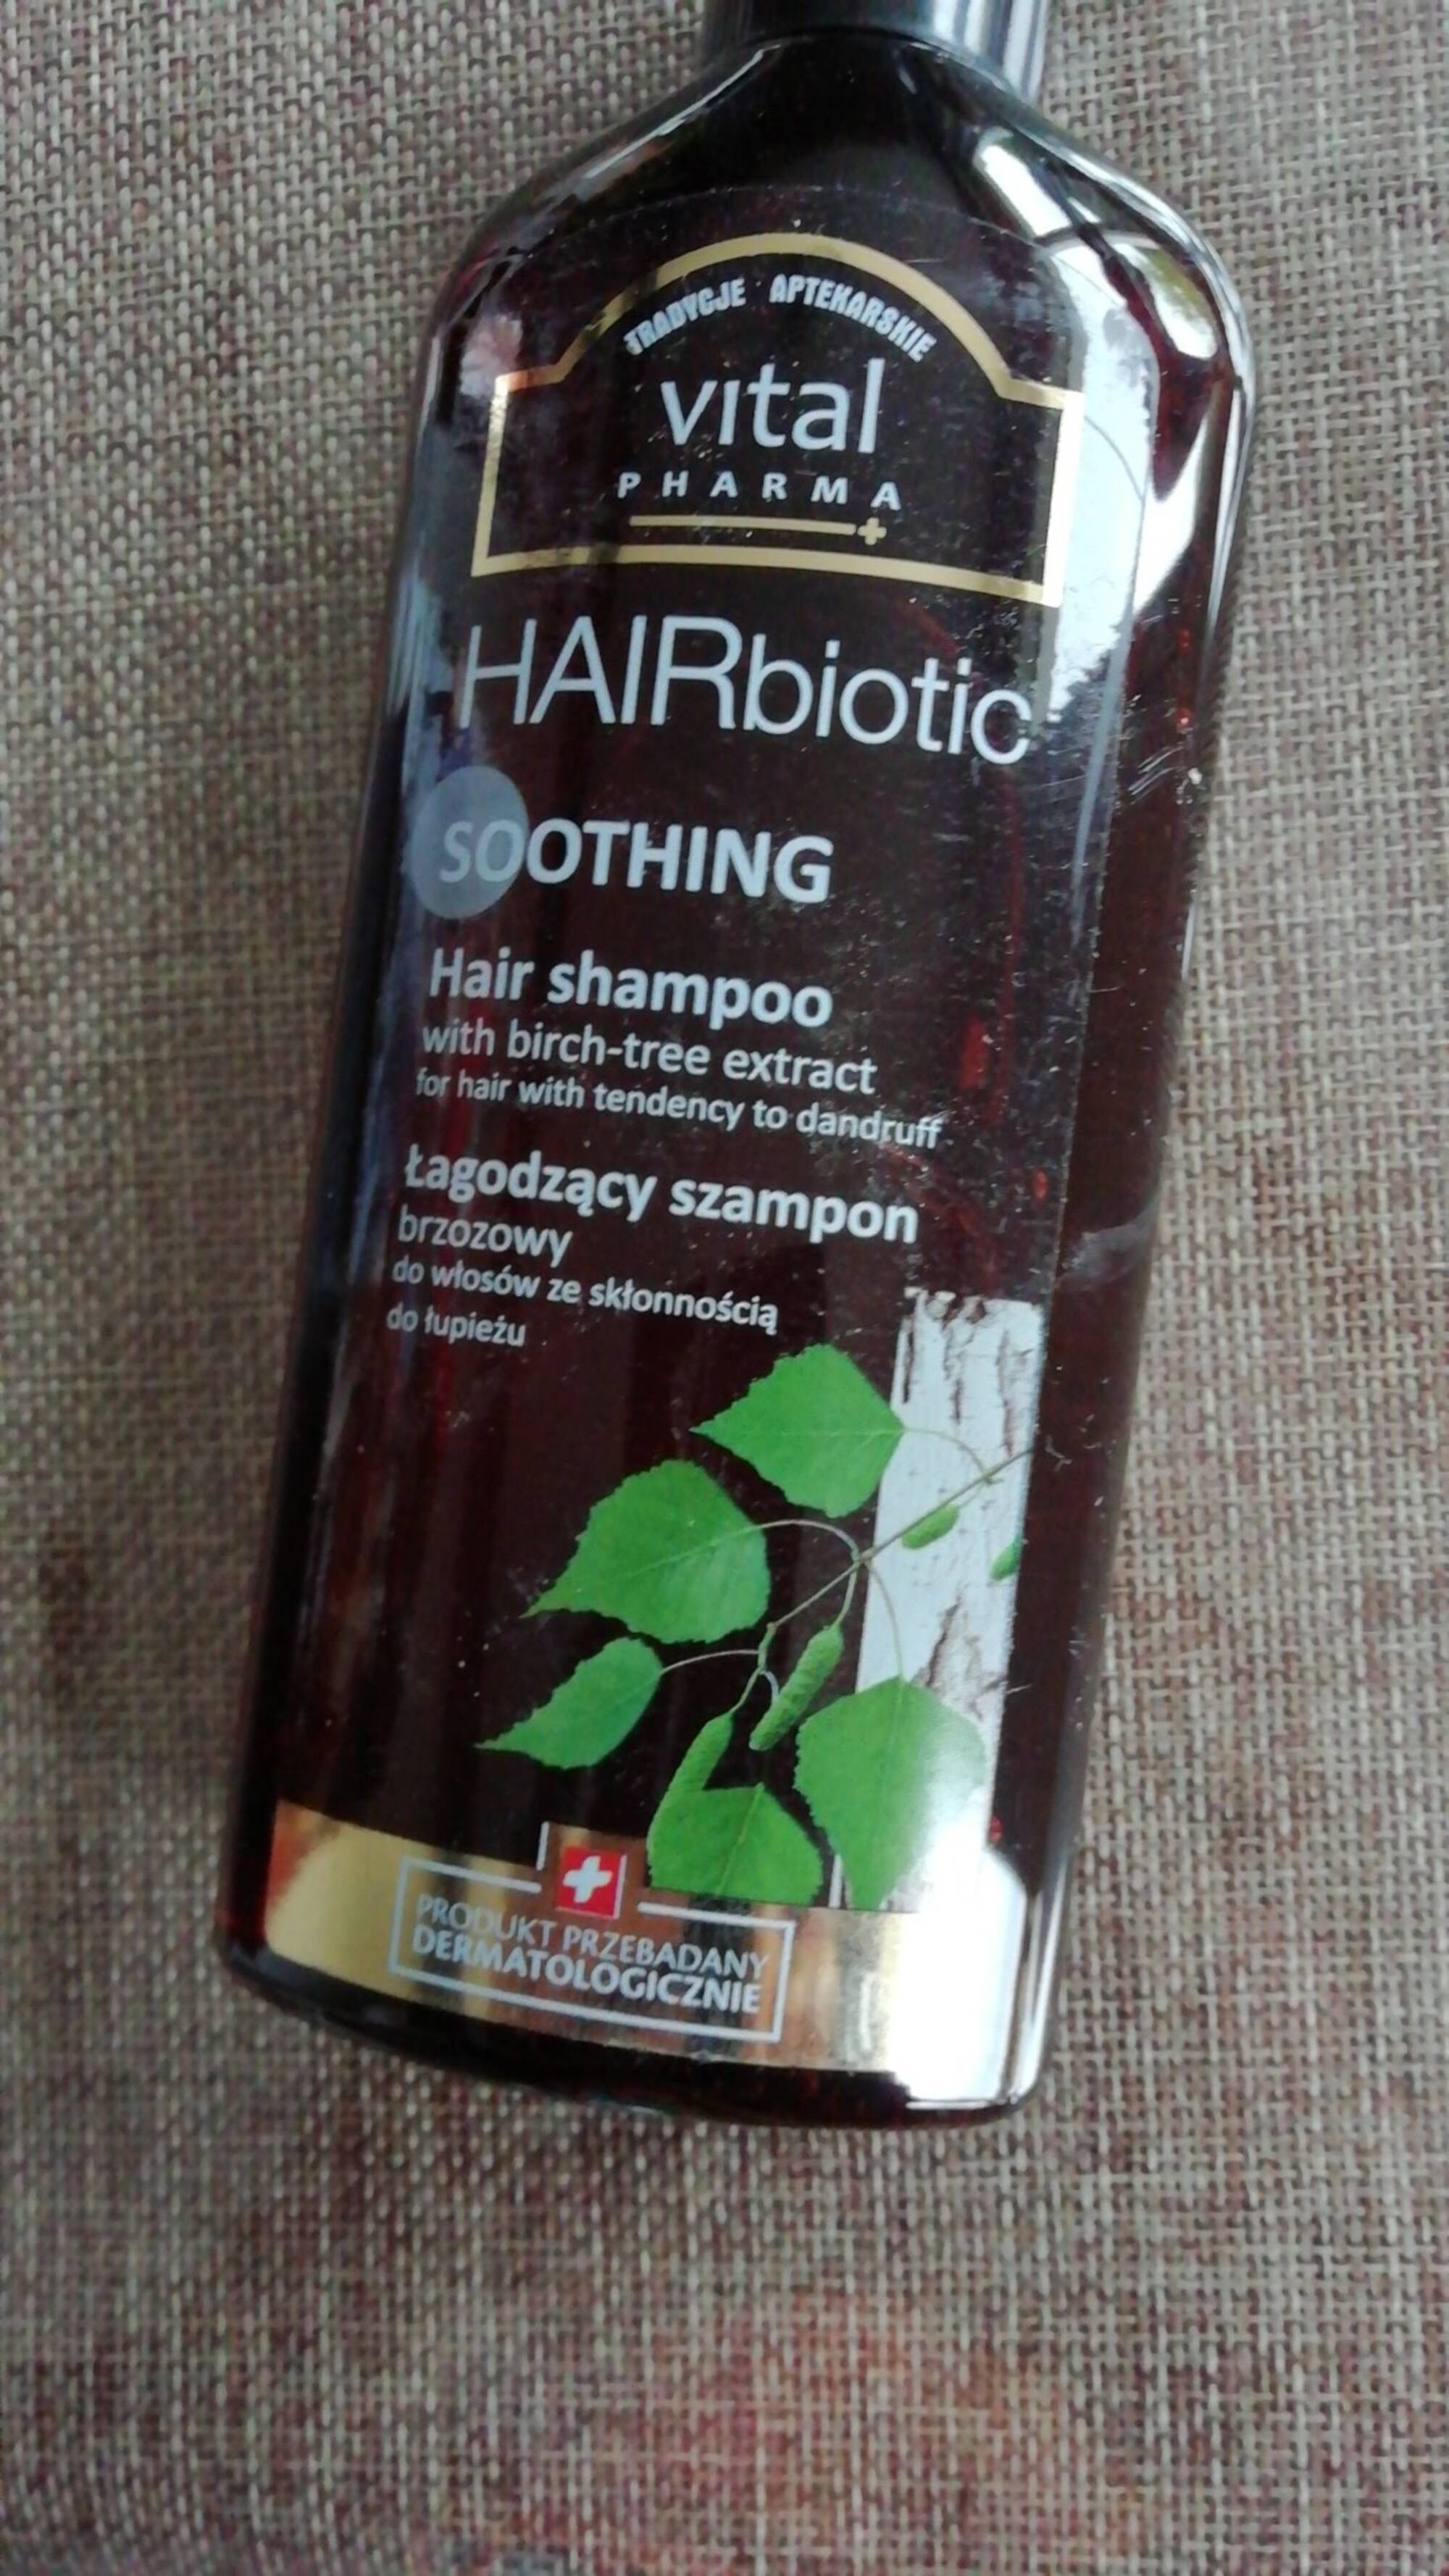 VITAL PHARMA - Hairbiotic soothing - Hair shampoo